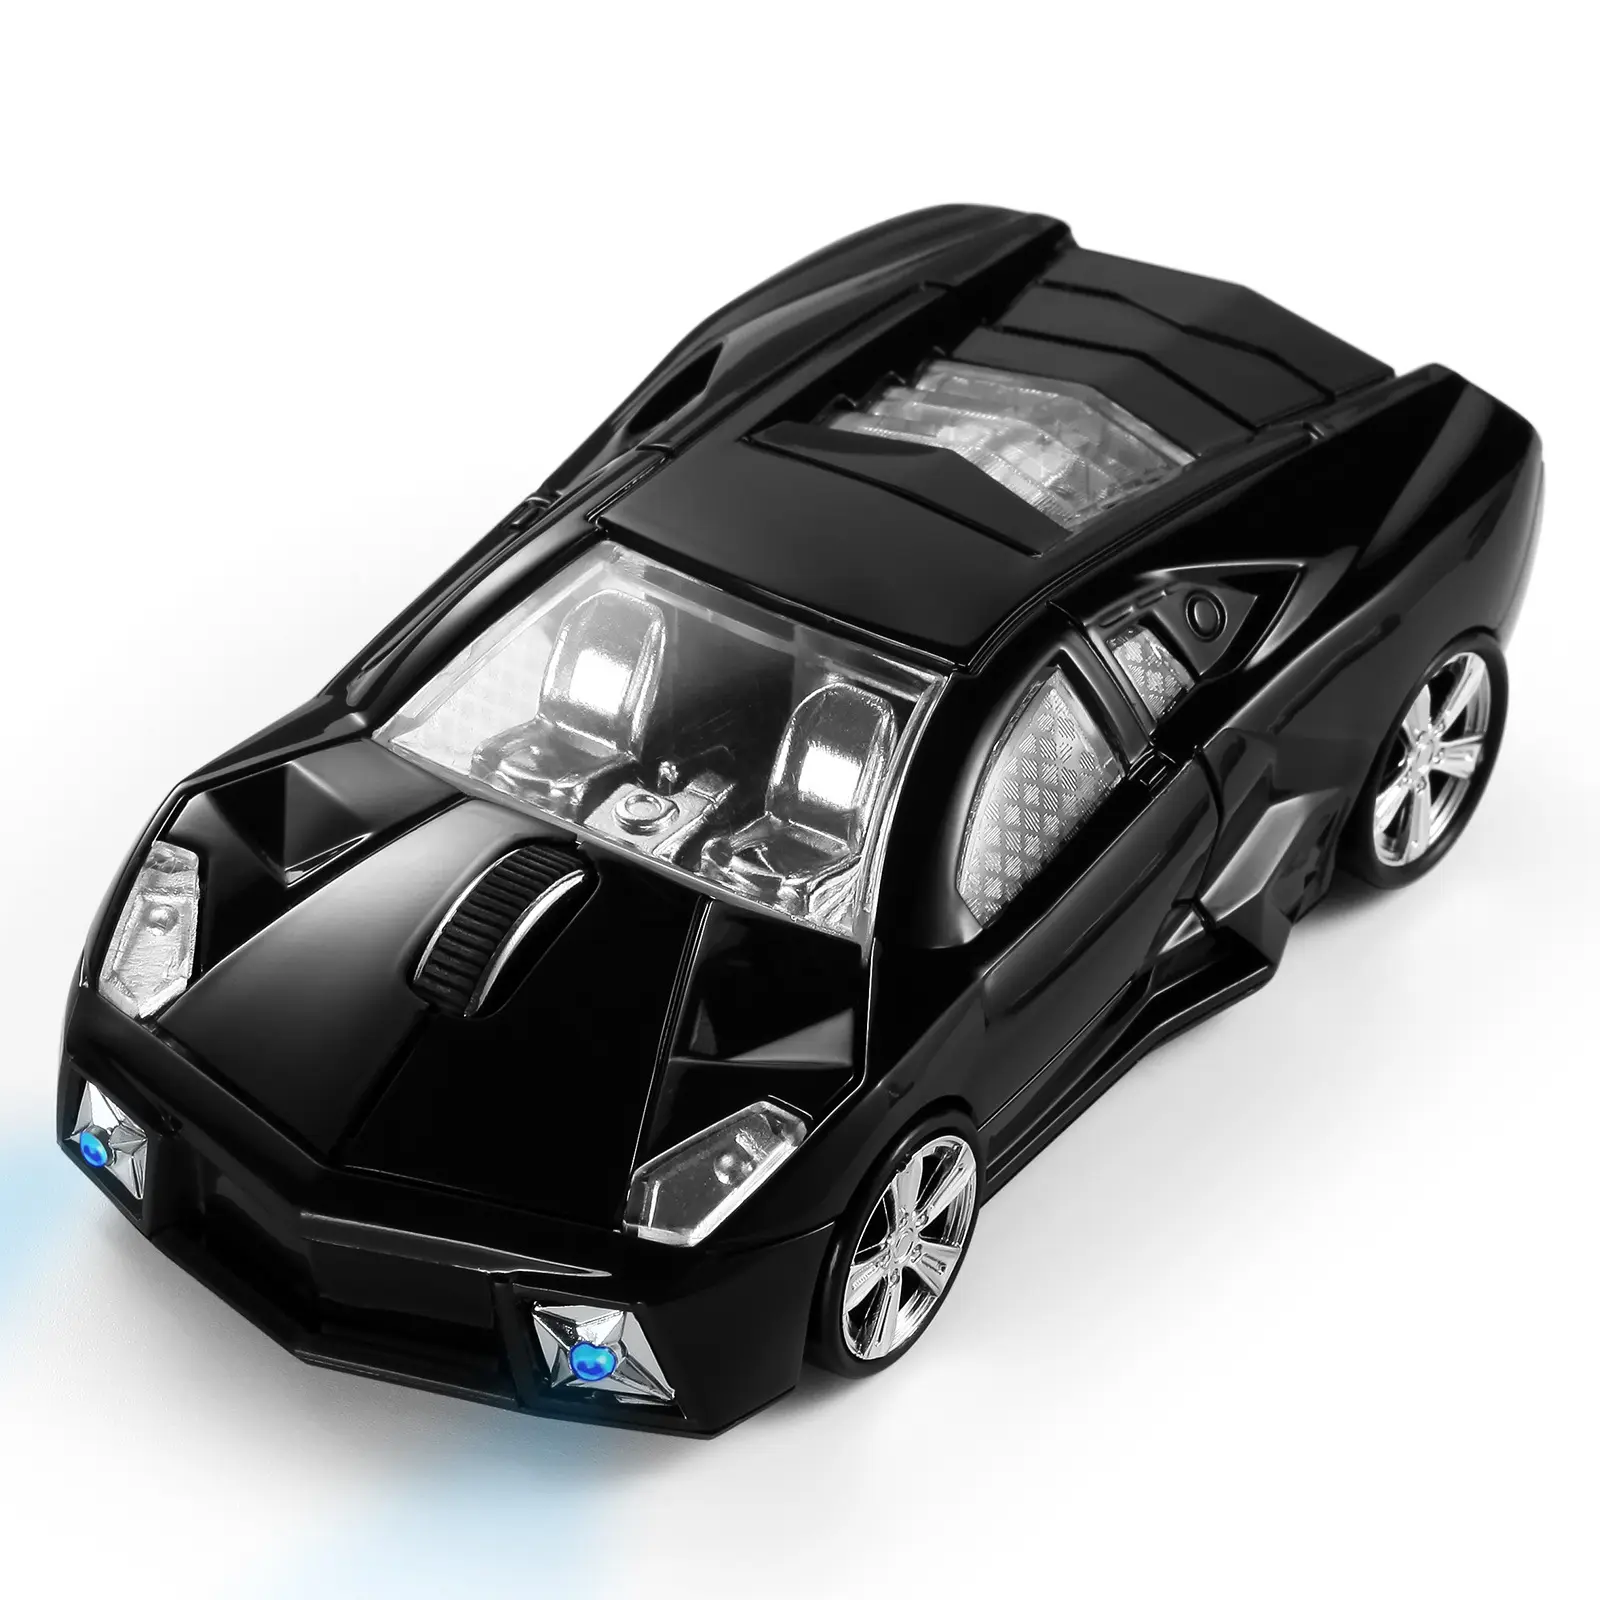 Sıcak satış yaratıcı hediyeler araba kablosuz fare araba modeli fare spor araba modeli usb oyunu bluetooth fare